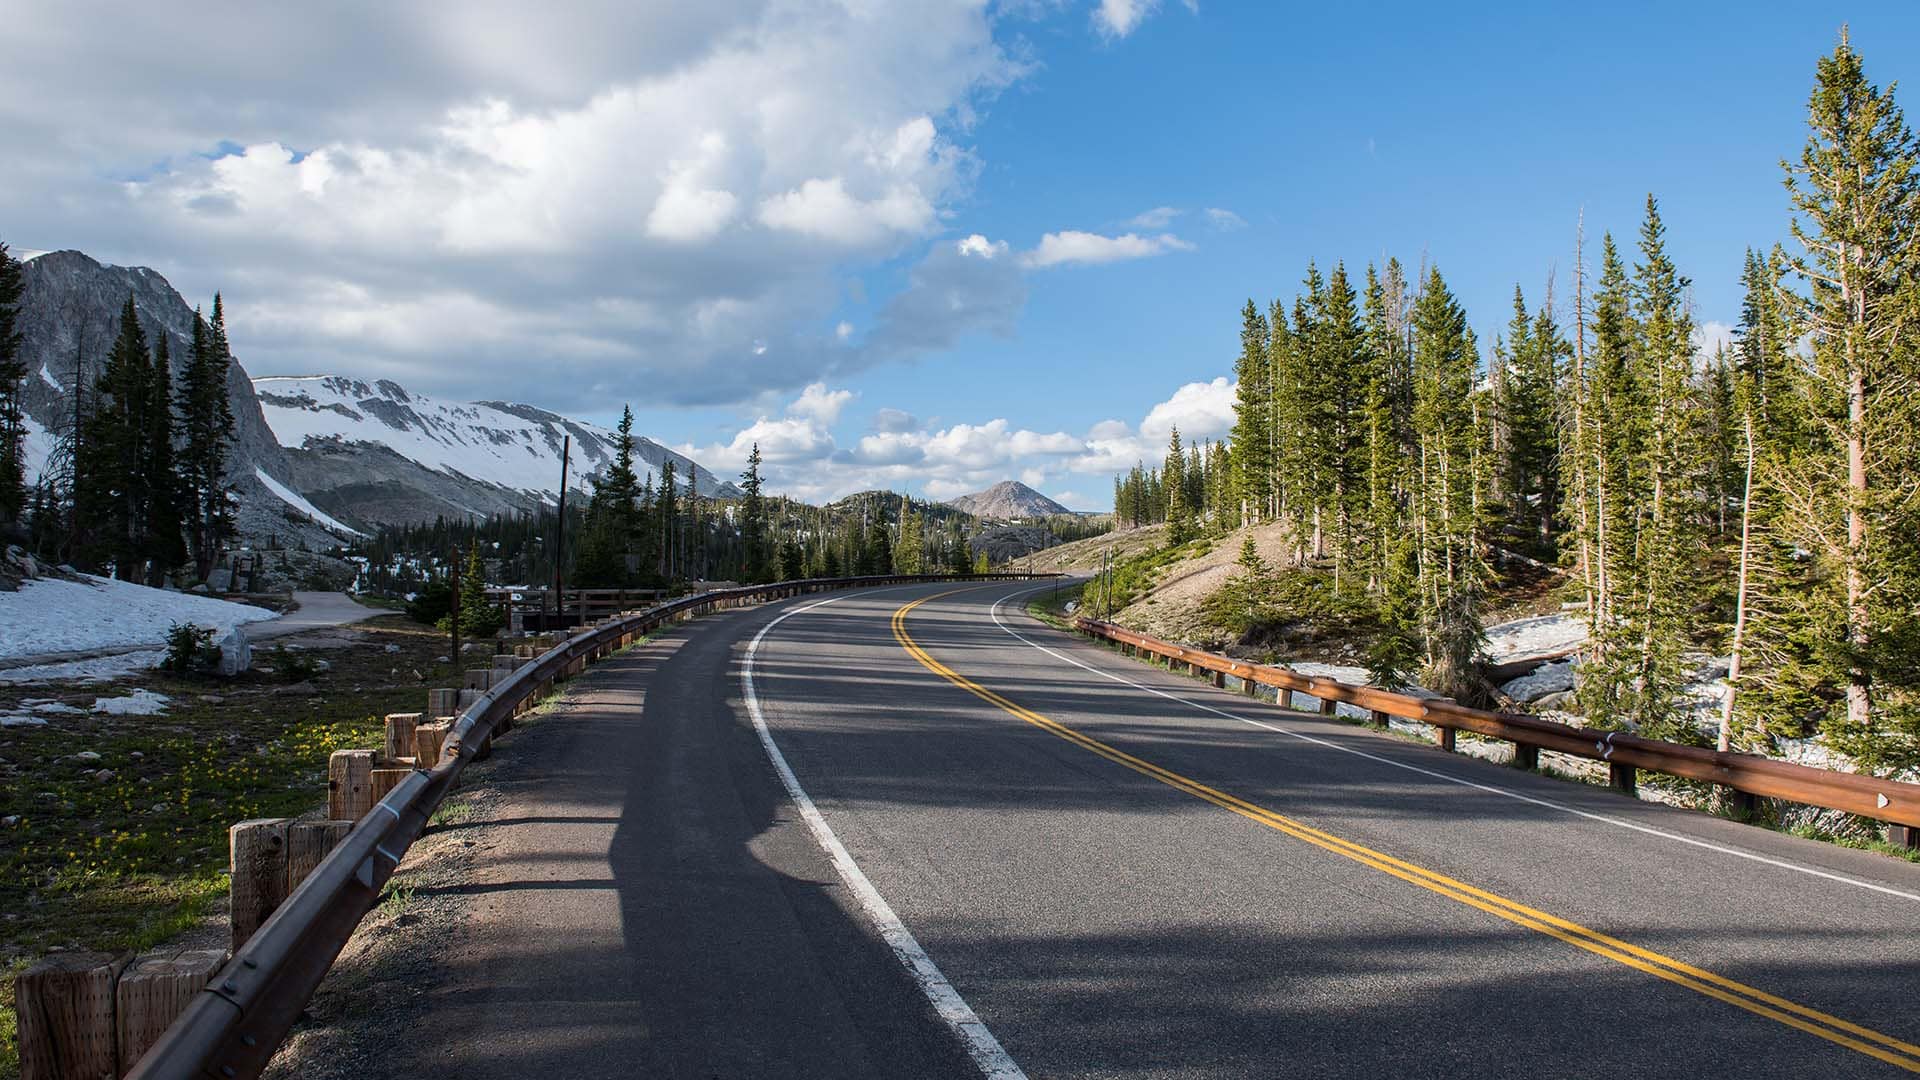 Longue de 47 kilomètres, la route touristique Snowy Range Scenic Byway emmène les conducteurs à travers des forêts denses et une toundra alpine.